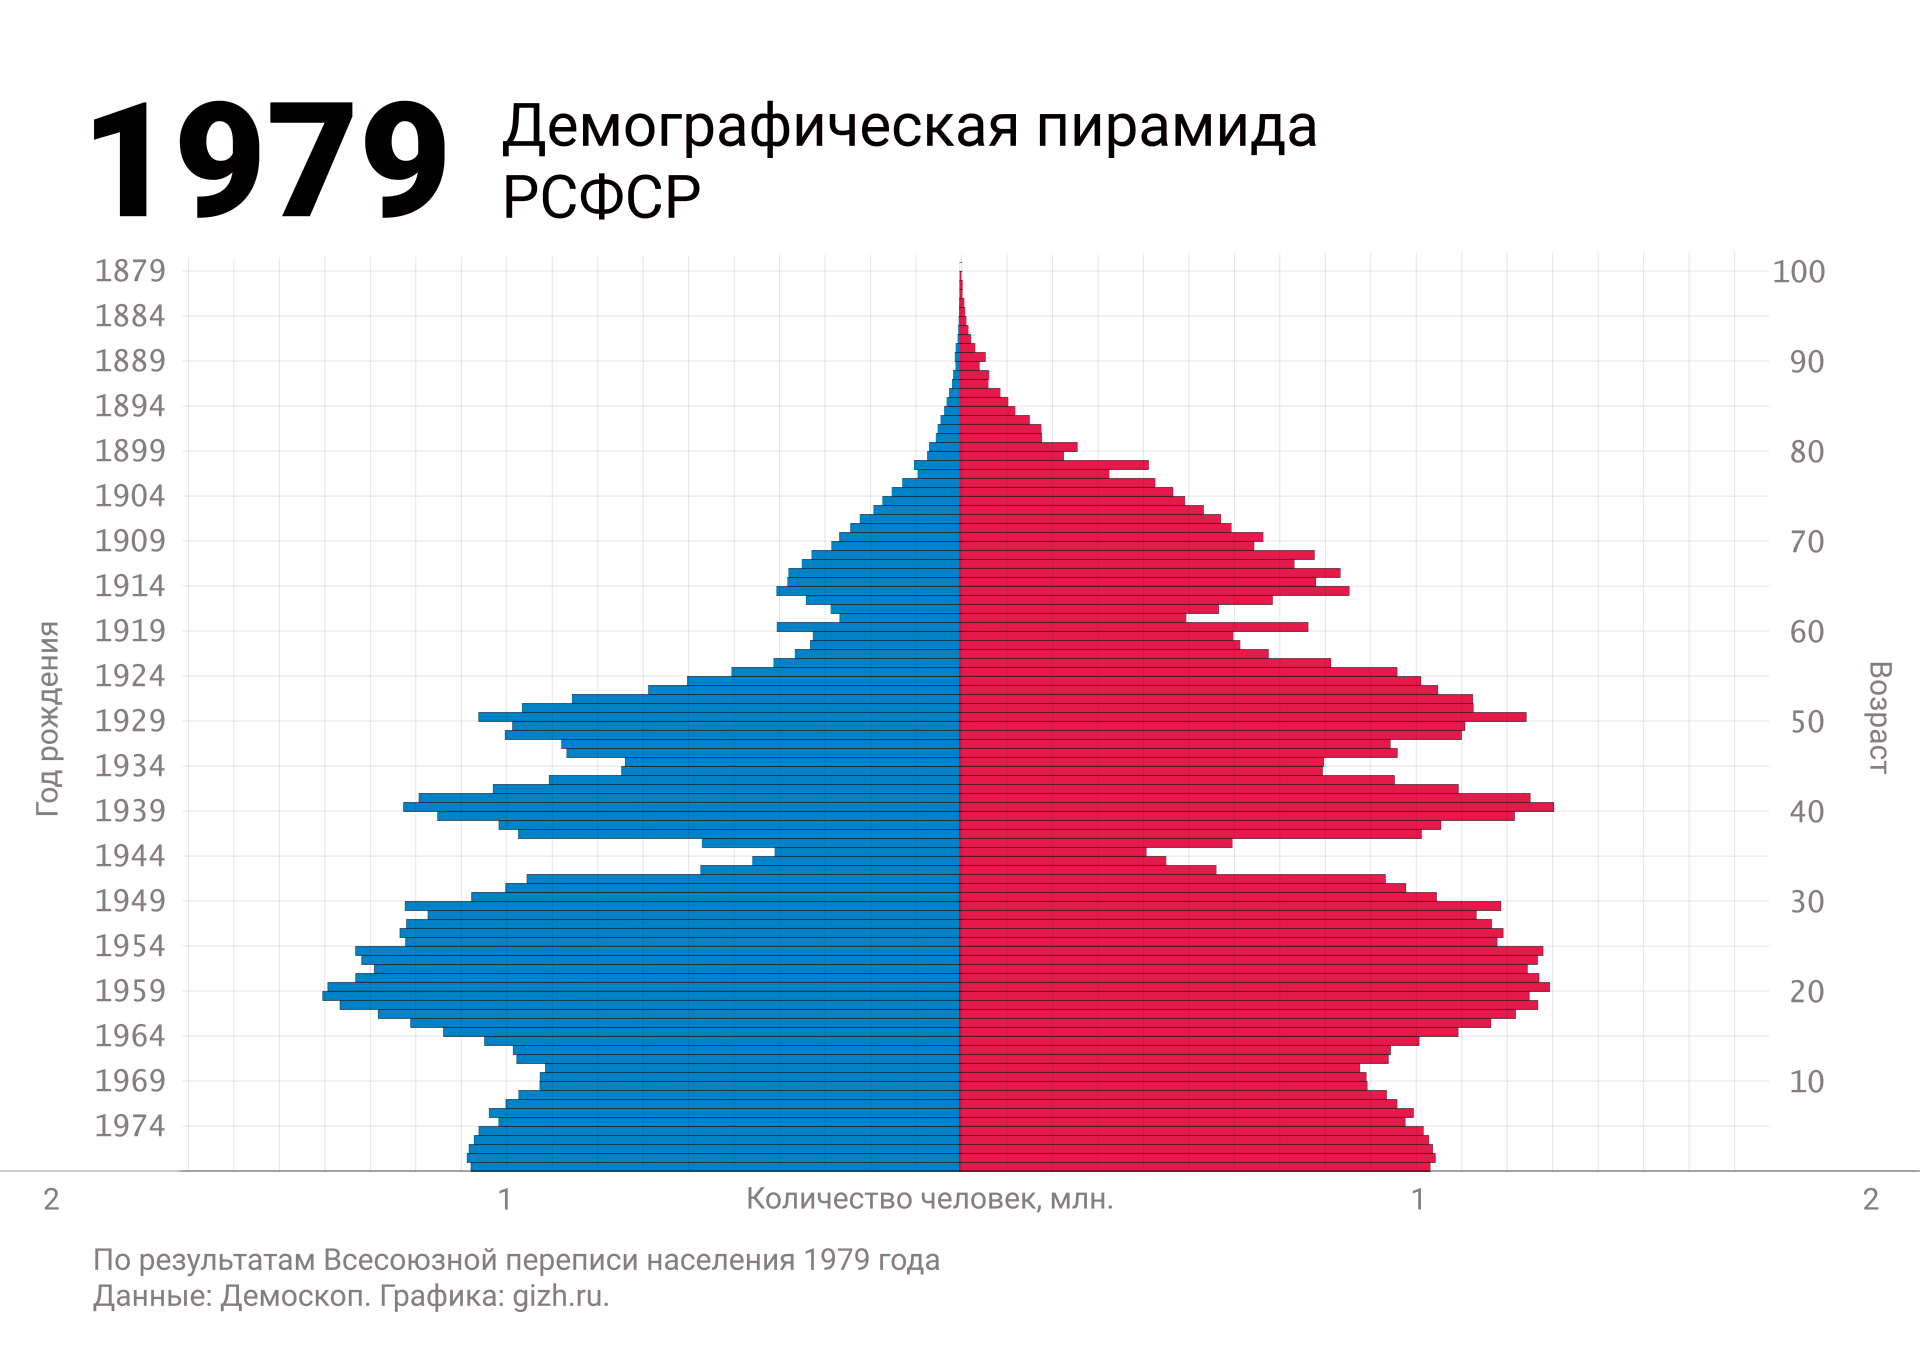 Демографическая (половозрастная) пирамида России (СССР, РСФСР) по переписи 1979